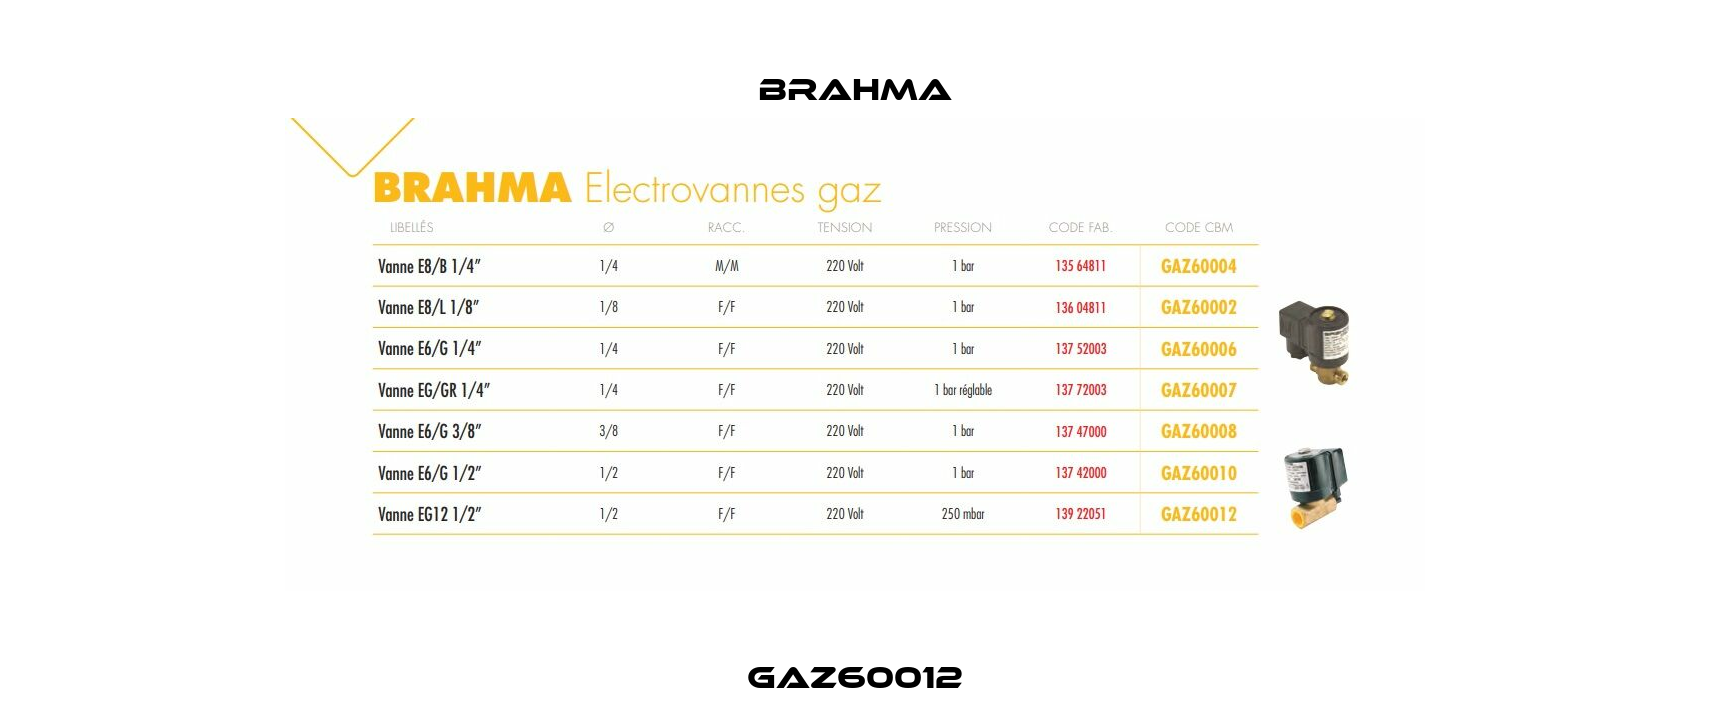 GAZ60012 Brahma